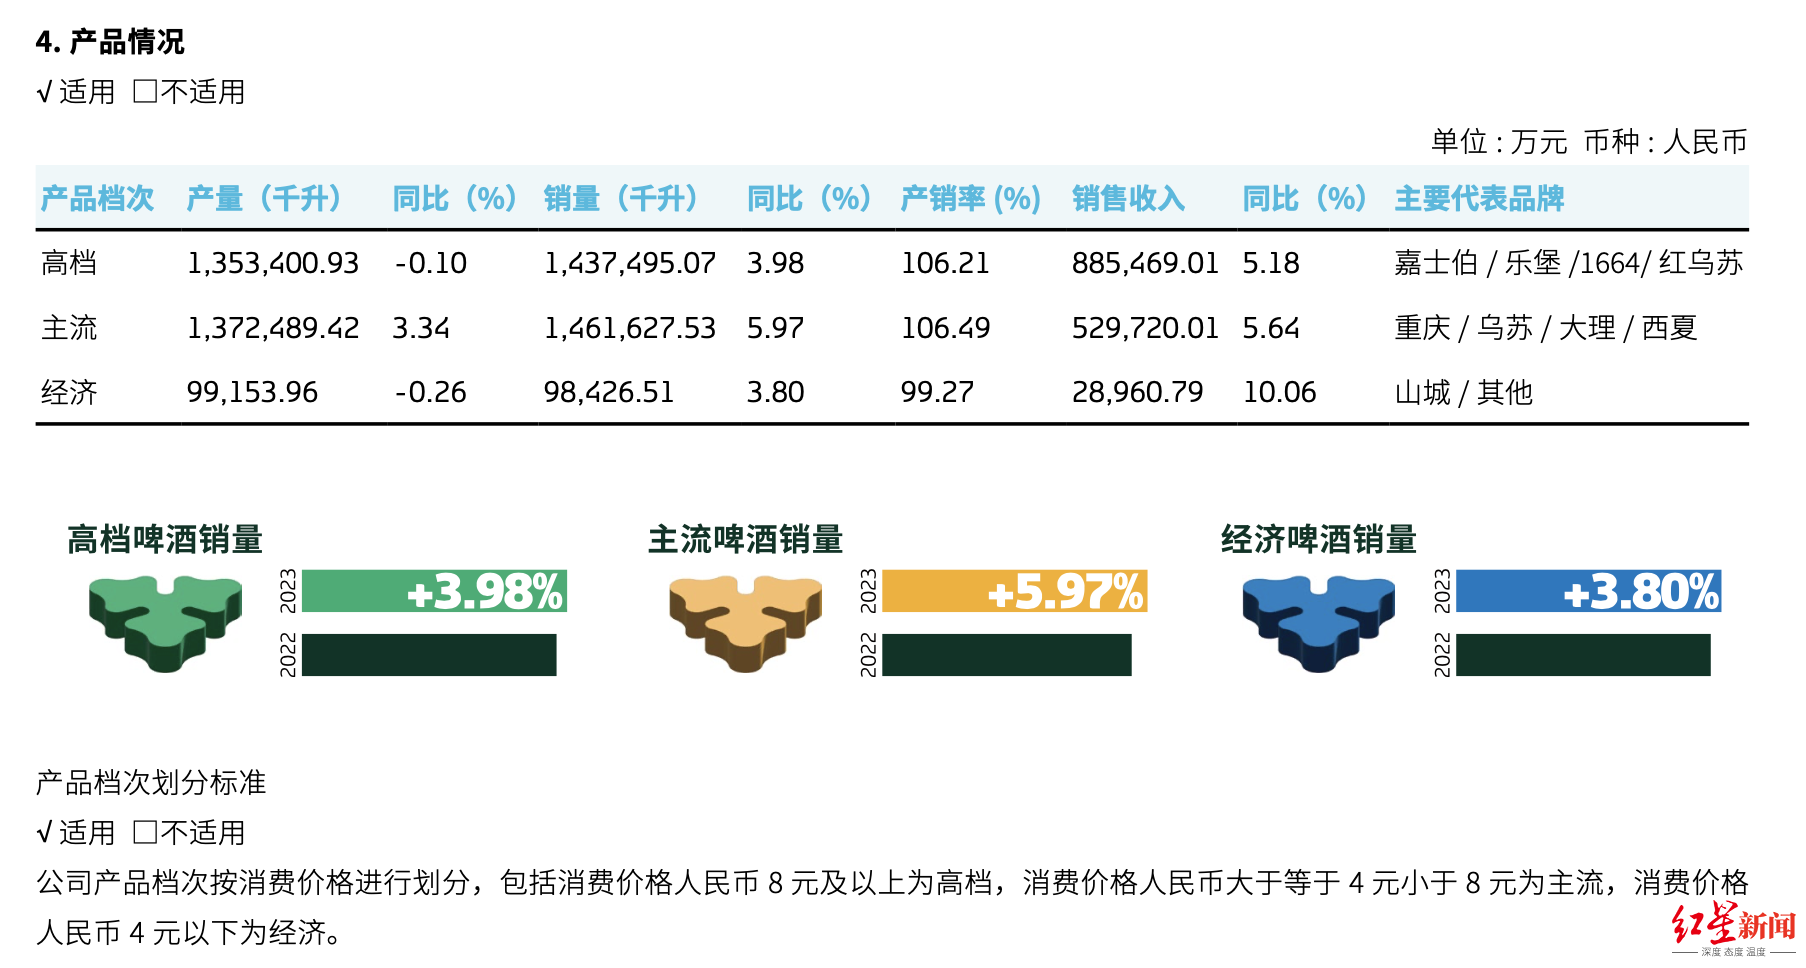 重庆啤酒高端化战略一年后 4元以下产品营收增幅最大 高档产品增幅最差